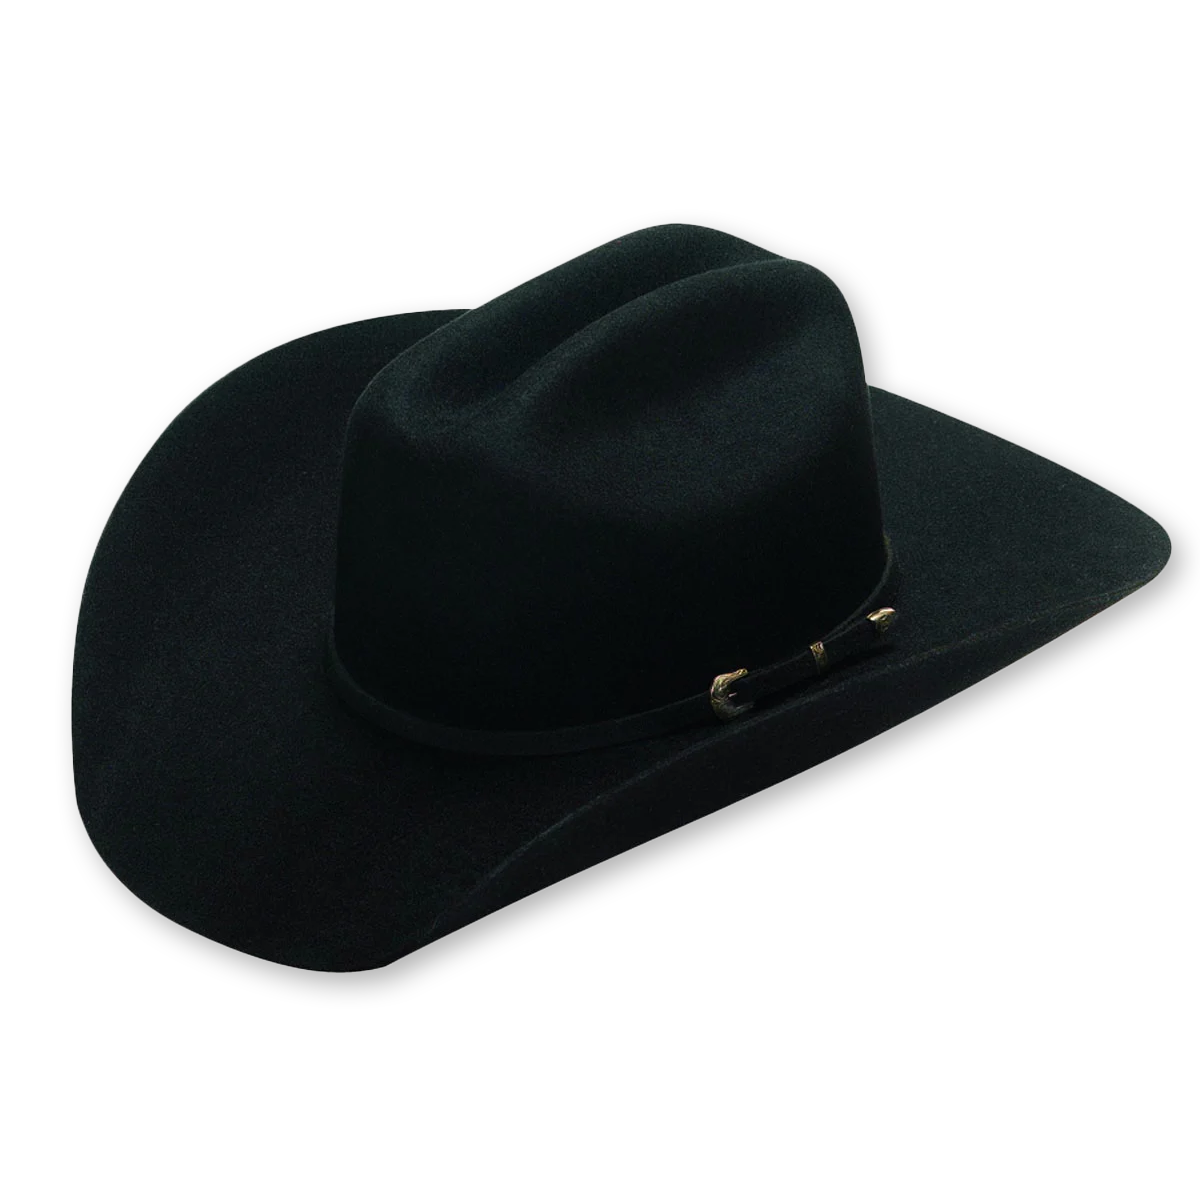 Twister Dallas Felt Cowboy Hat - Black